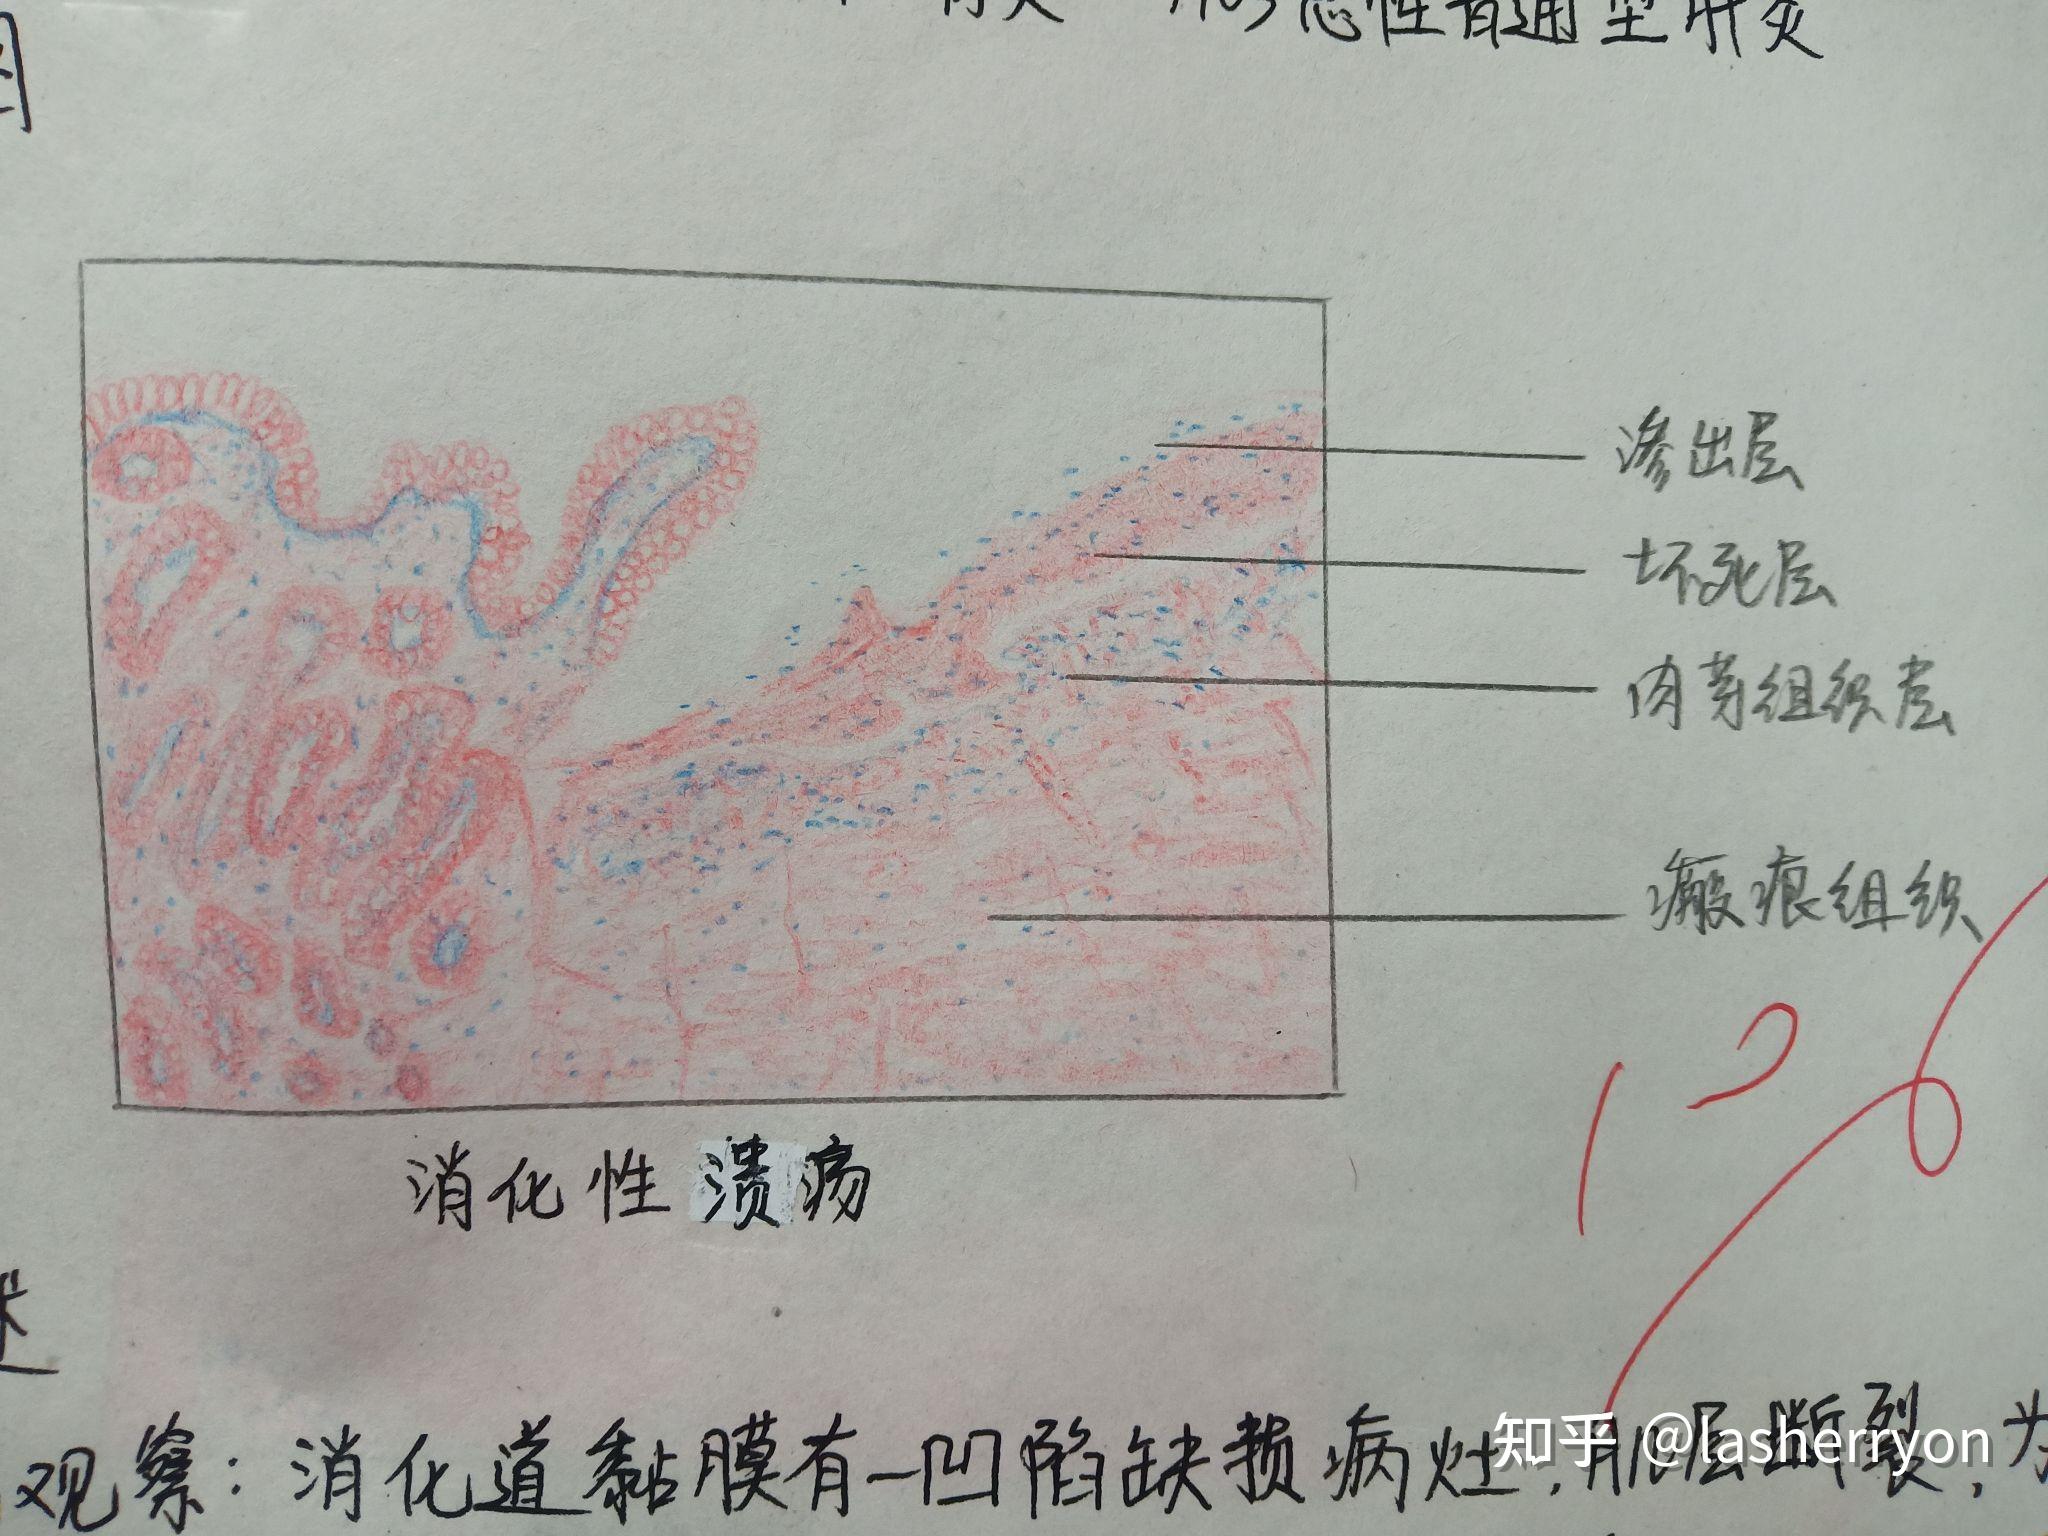 肠结核红蓝铅笔图图片